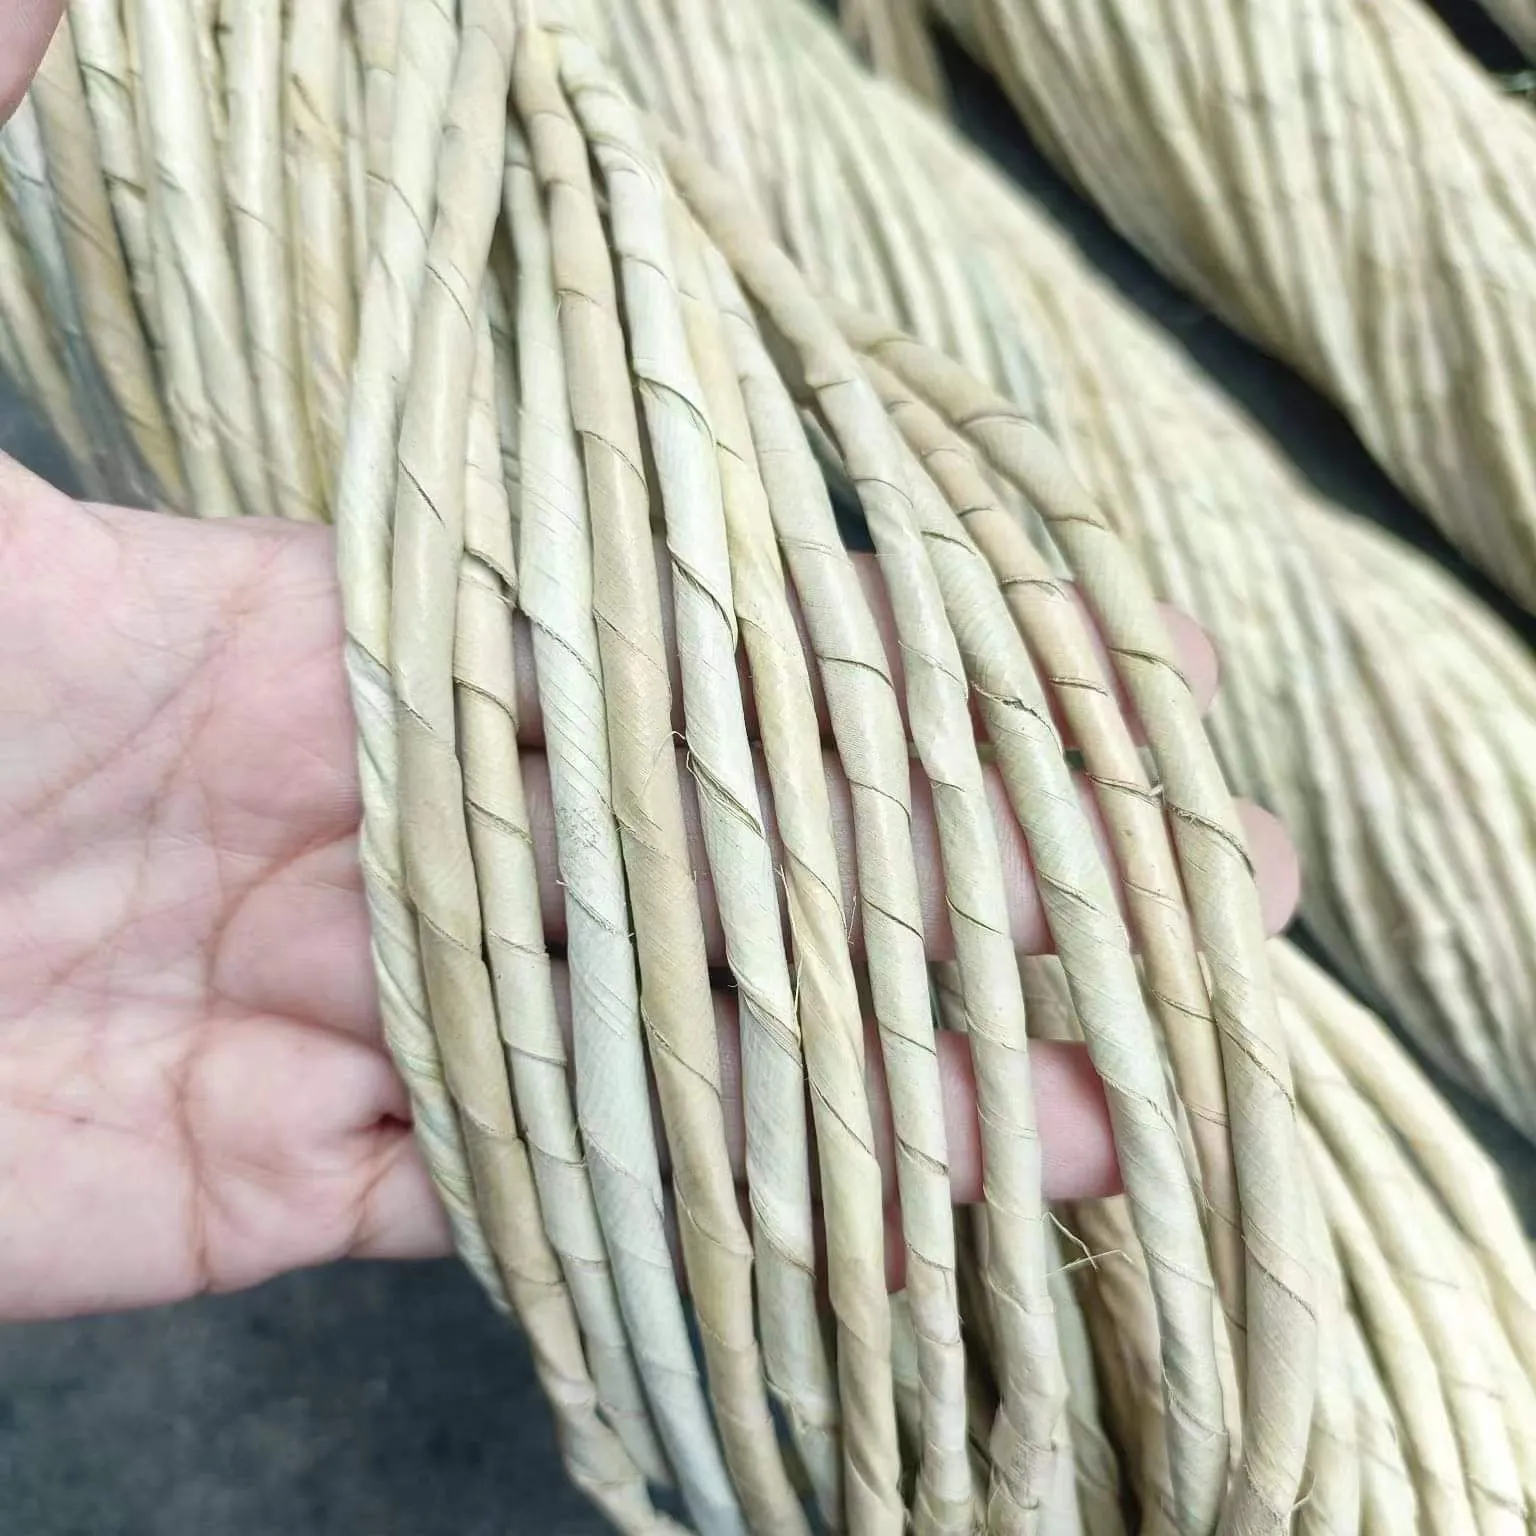 Philippine Raffia twine Rope được sử dụng cho lưu trữ giỏ bện giỏ quà gói placemat sợi tự nhiên sợi dây thừng chất liệu